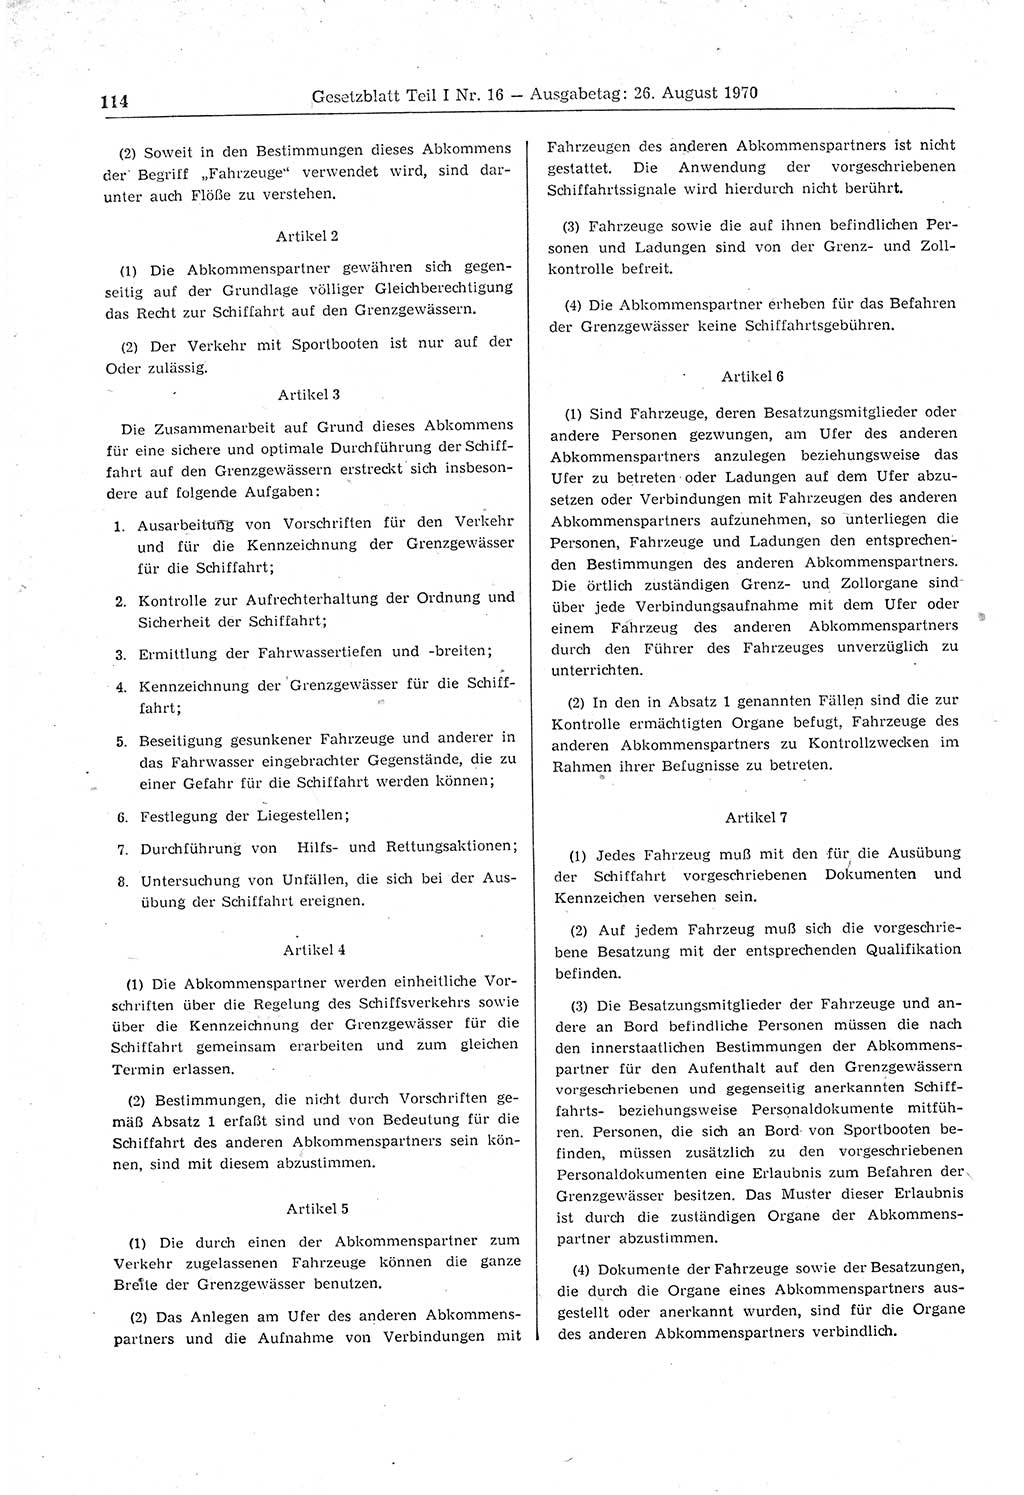 Gesetzblatt (GBl.) der Deutschen Demokratischen Republik (DDR) Teil Ⅰ 1970, Seite 114 (GBl. DDR Ⅰ 1970, S. 114)